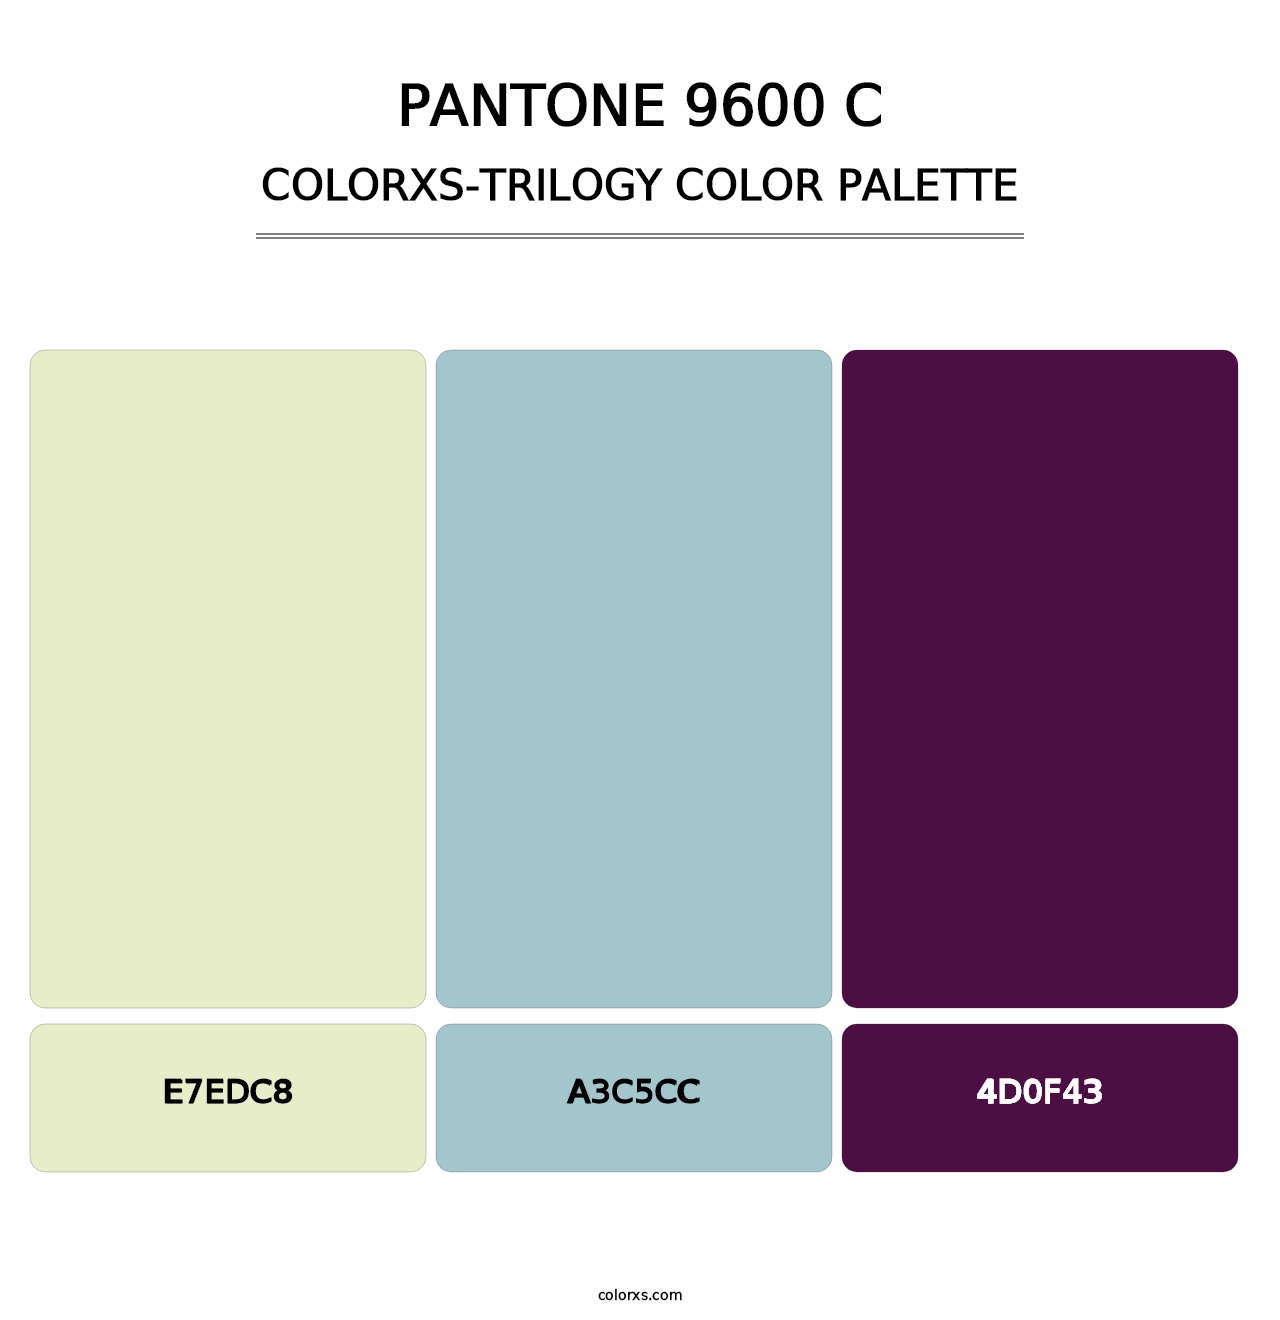 PANTONE 9600 C - Colorxs Trilogy Palette